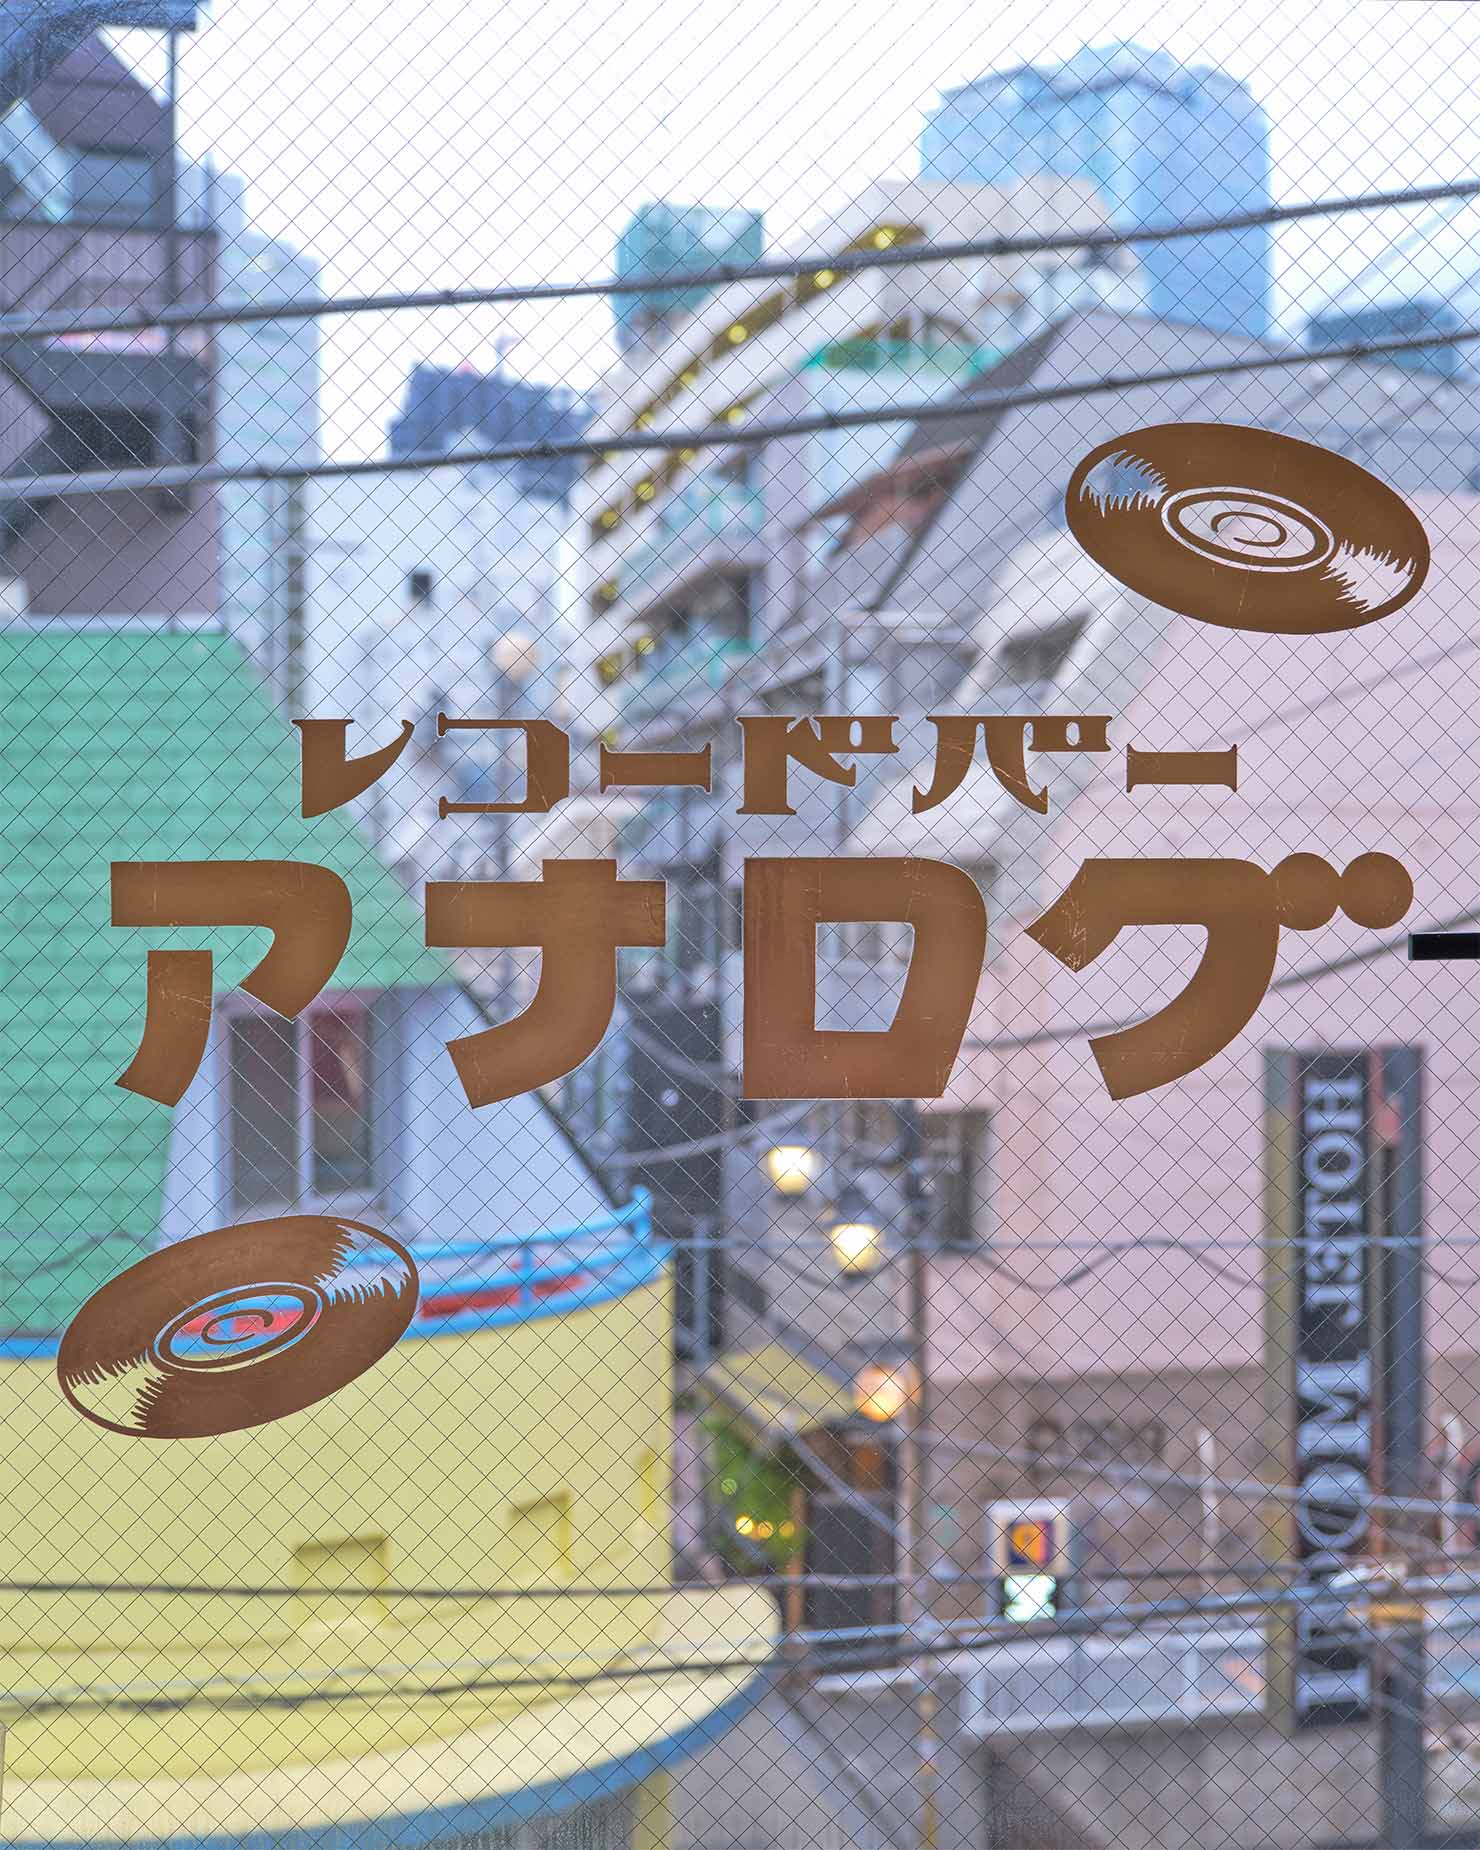 【渋谷】レトロモダンなレコードバー「RECORD BAR analog」と姉妹店「BOUNCE」